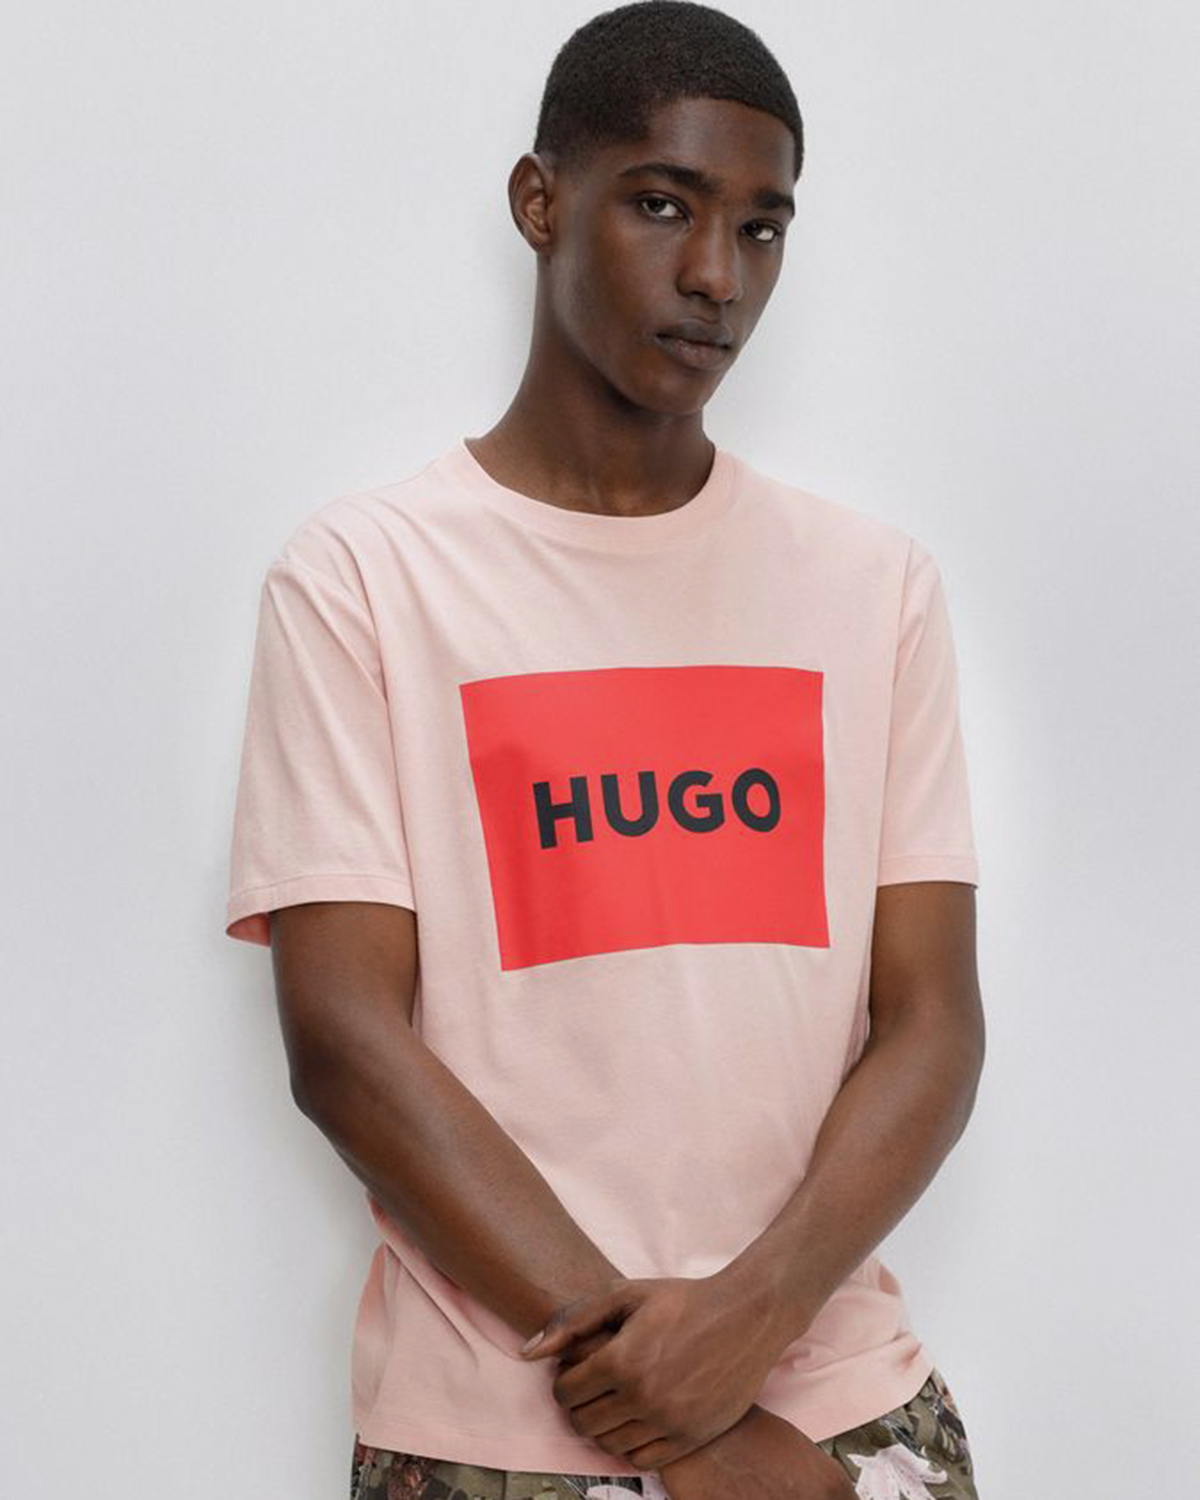 Футболка Hugo. Футболка Hugo с гусем. Рубашка с надписями Hugo. Фото футболок Хуго босс. Hugo размеры